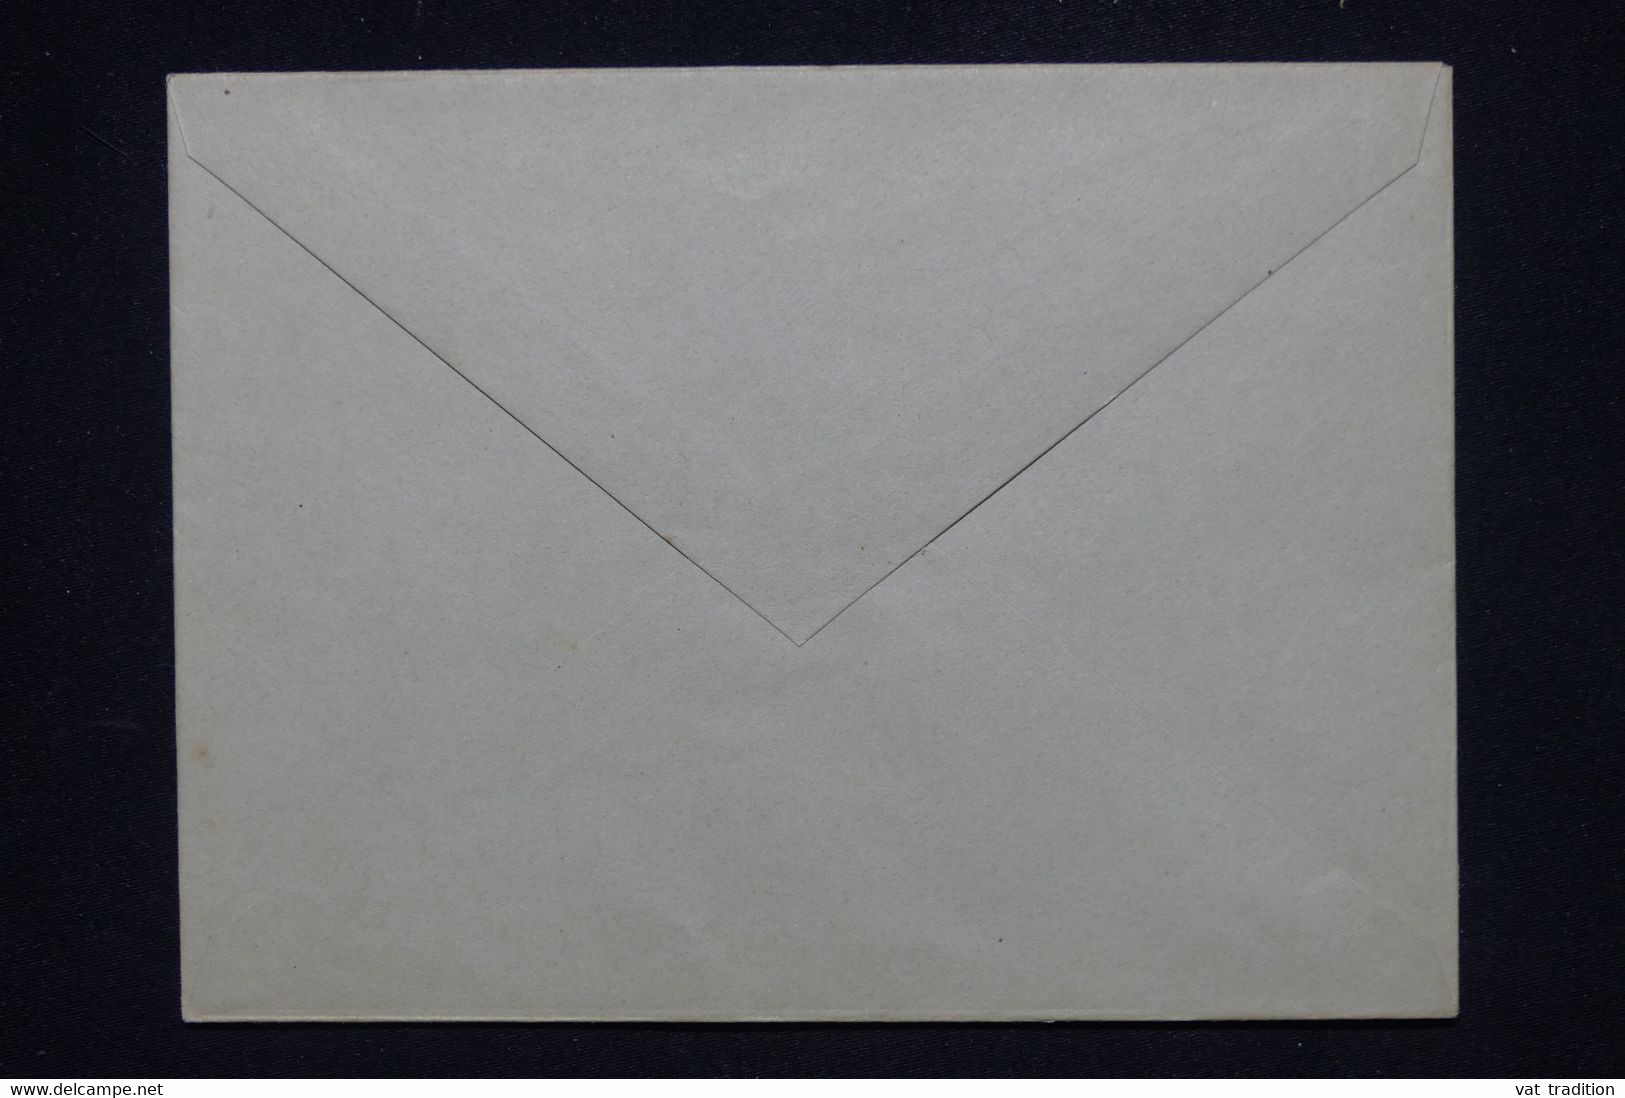 PORT SAÏD - Entier Postal Type Mouchon ( Enveloppe ) Non Utilisé - L 120452 - Brieven En Documenten